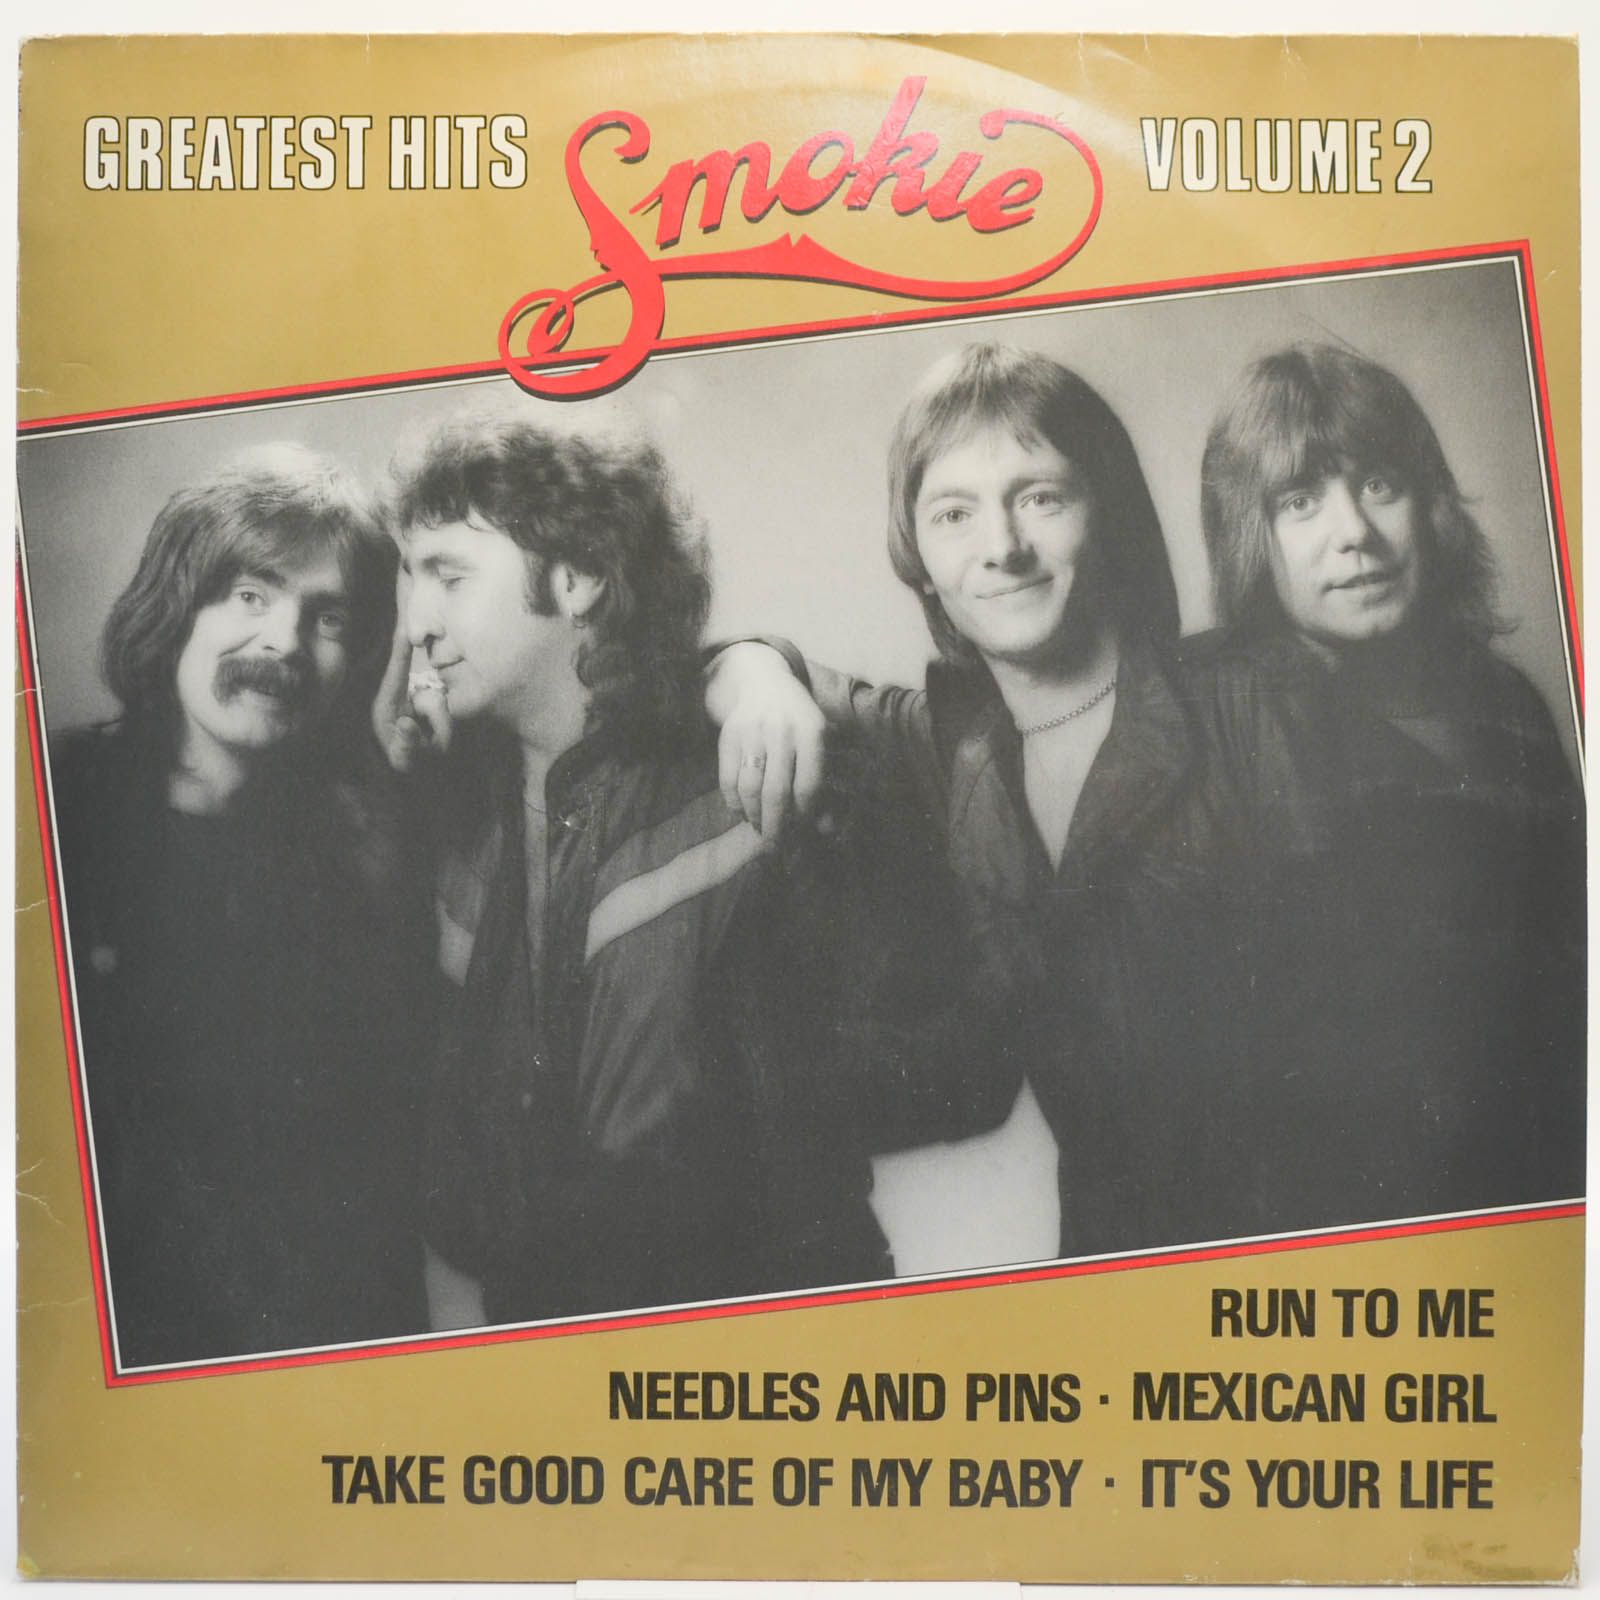 Smokie — Greatest Hits Volume 2, 1980